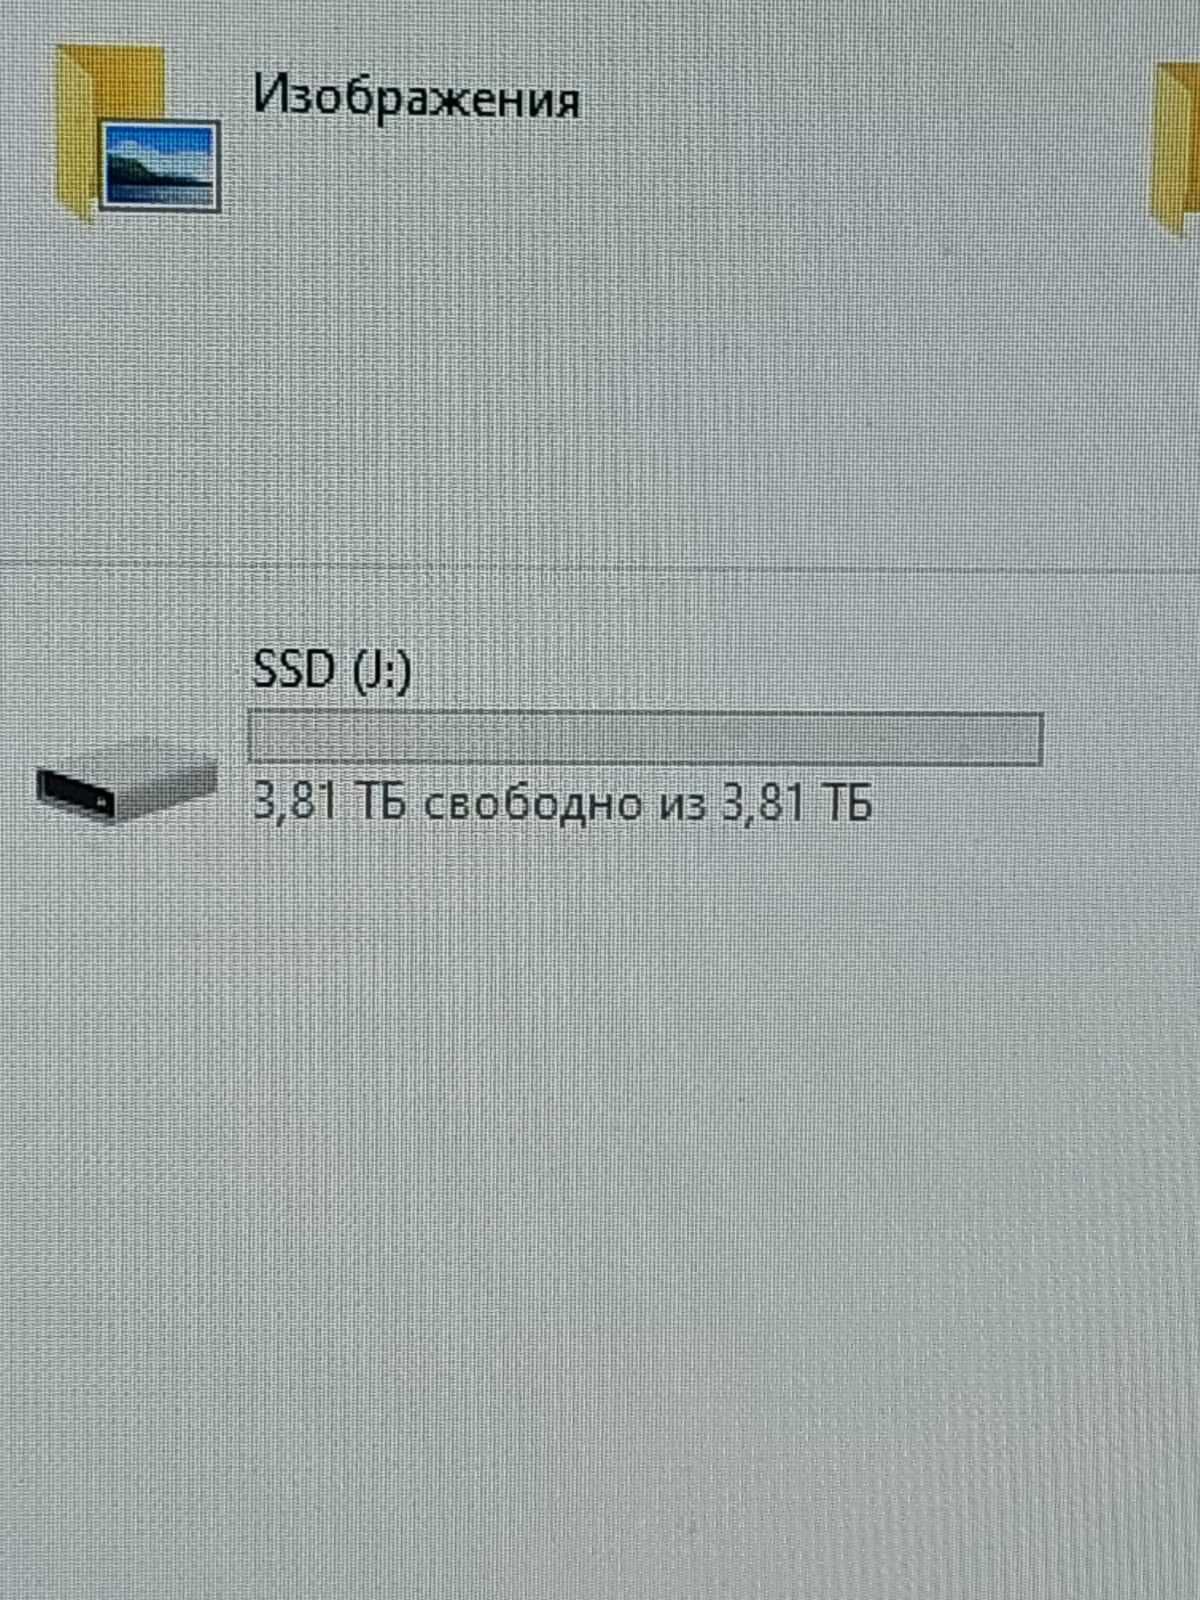 Жесткий внешний диск Portable SSD на 4 терабайта